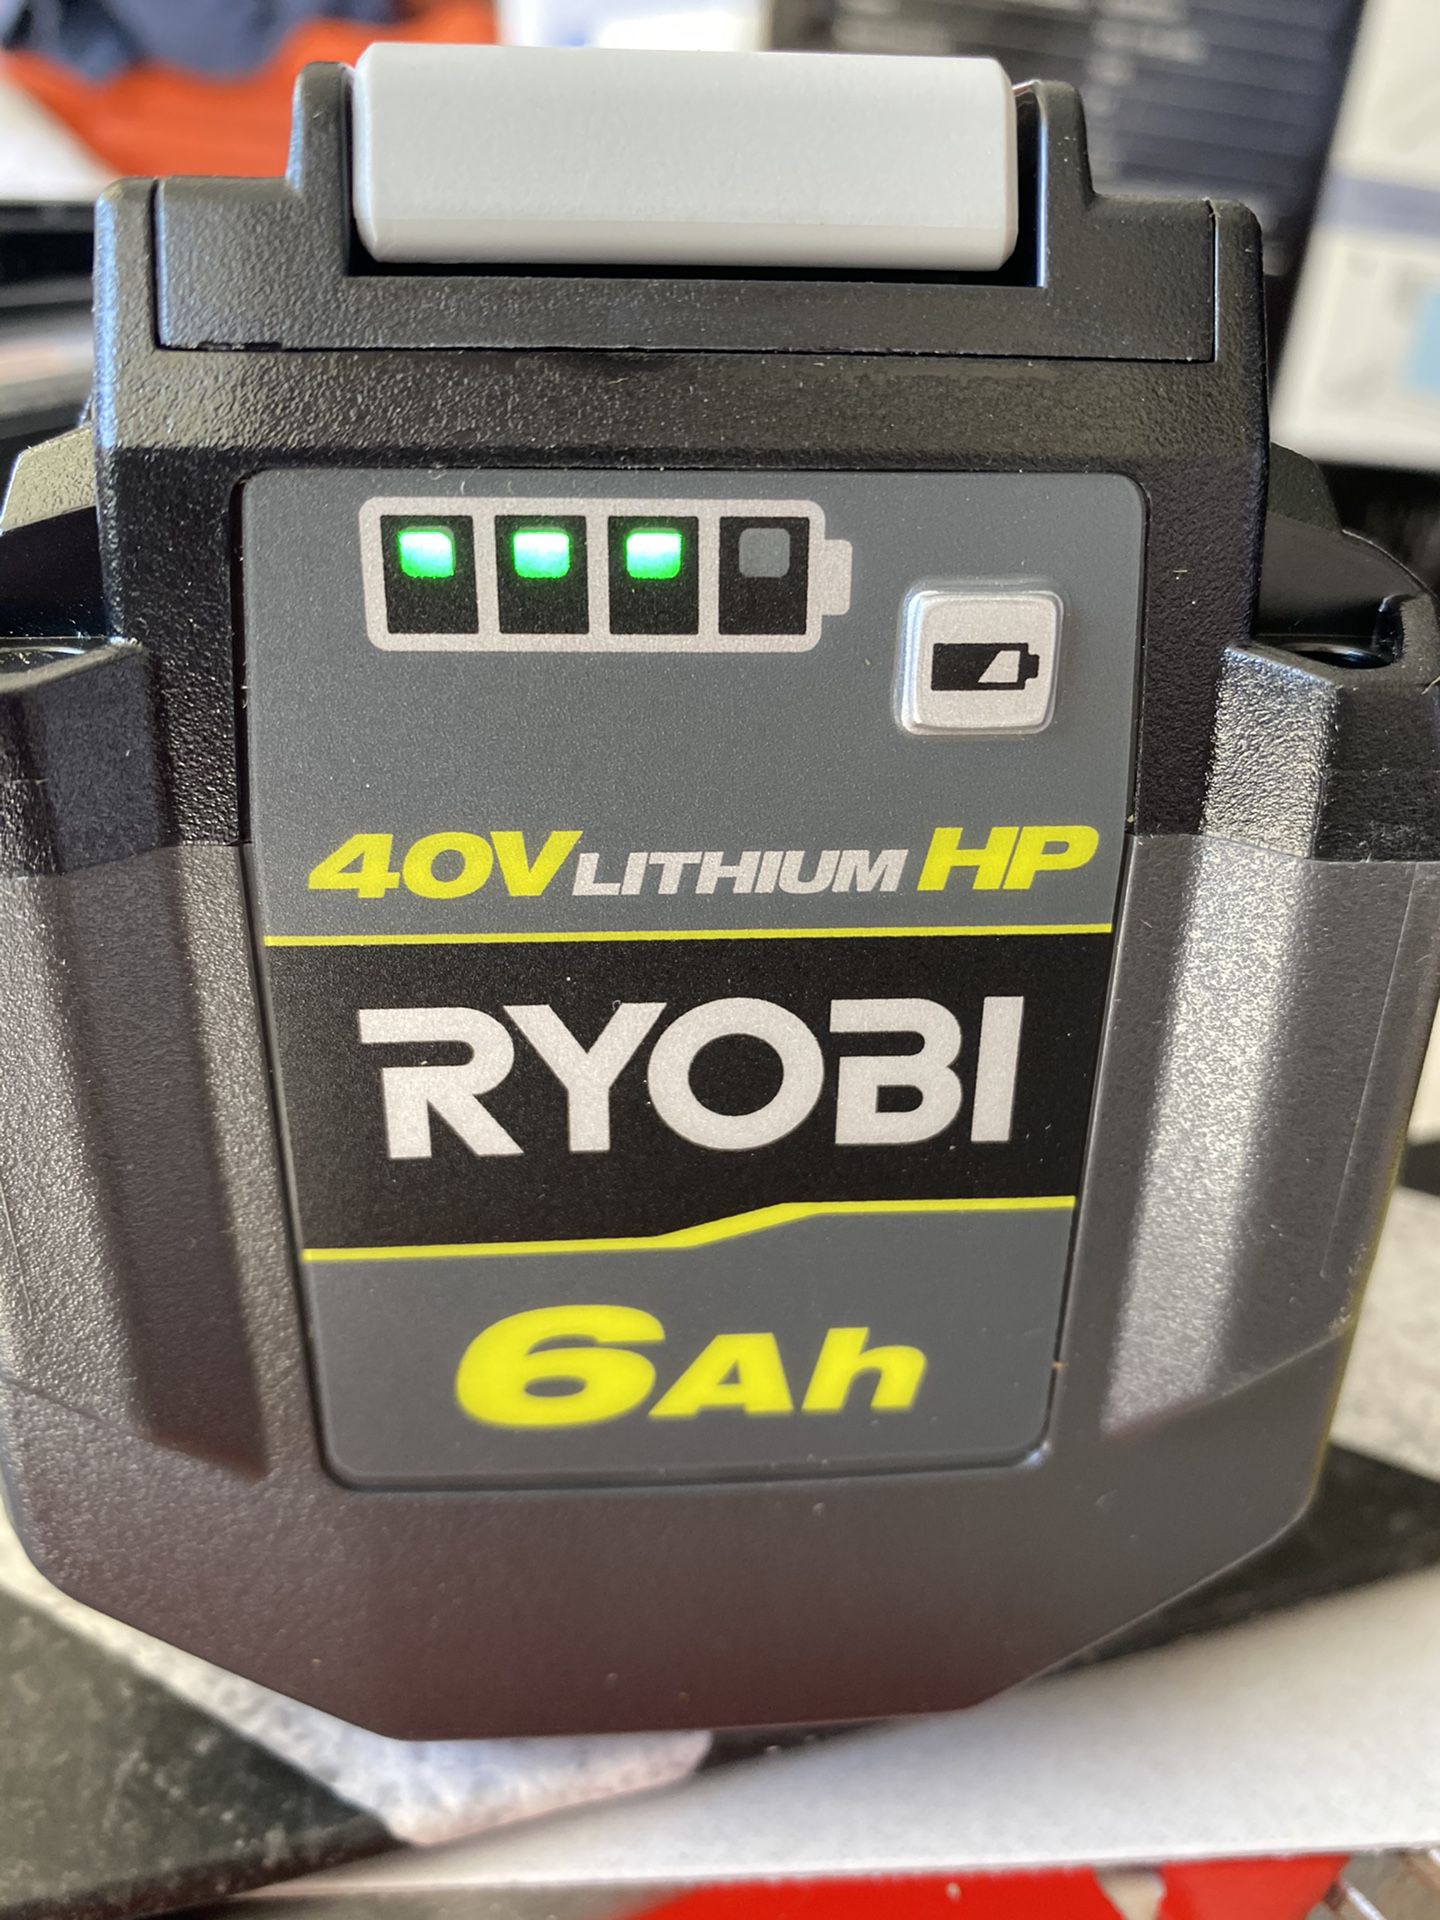 Ryobi big 40v lithium HP 6ah battery